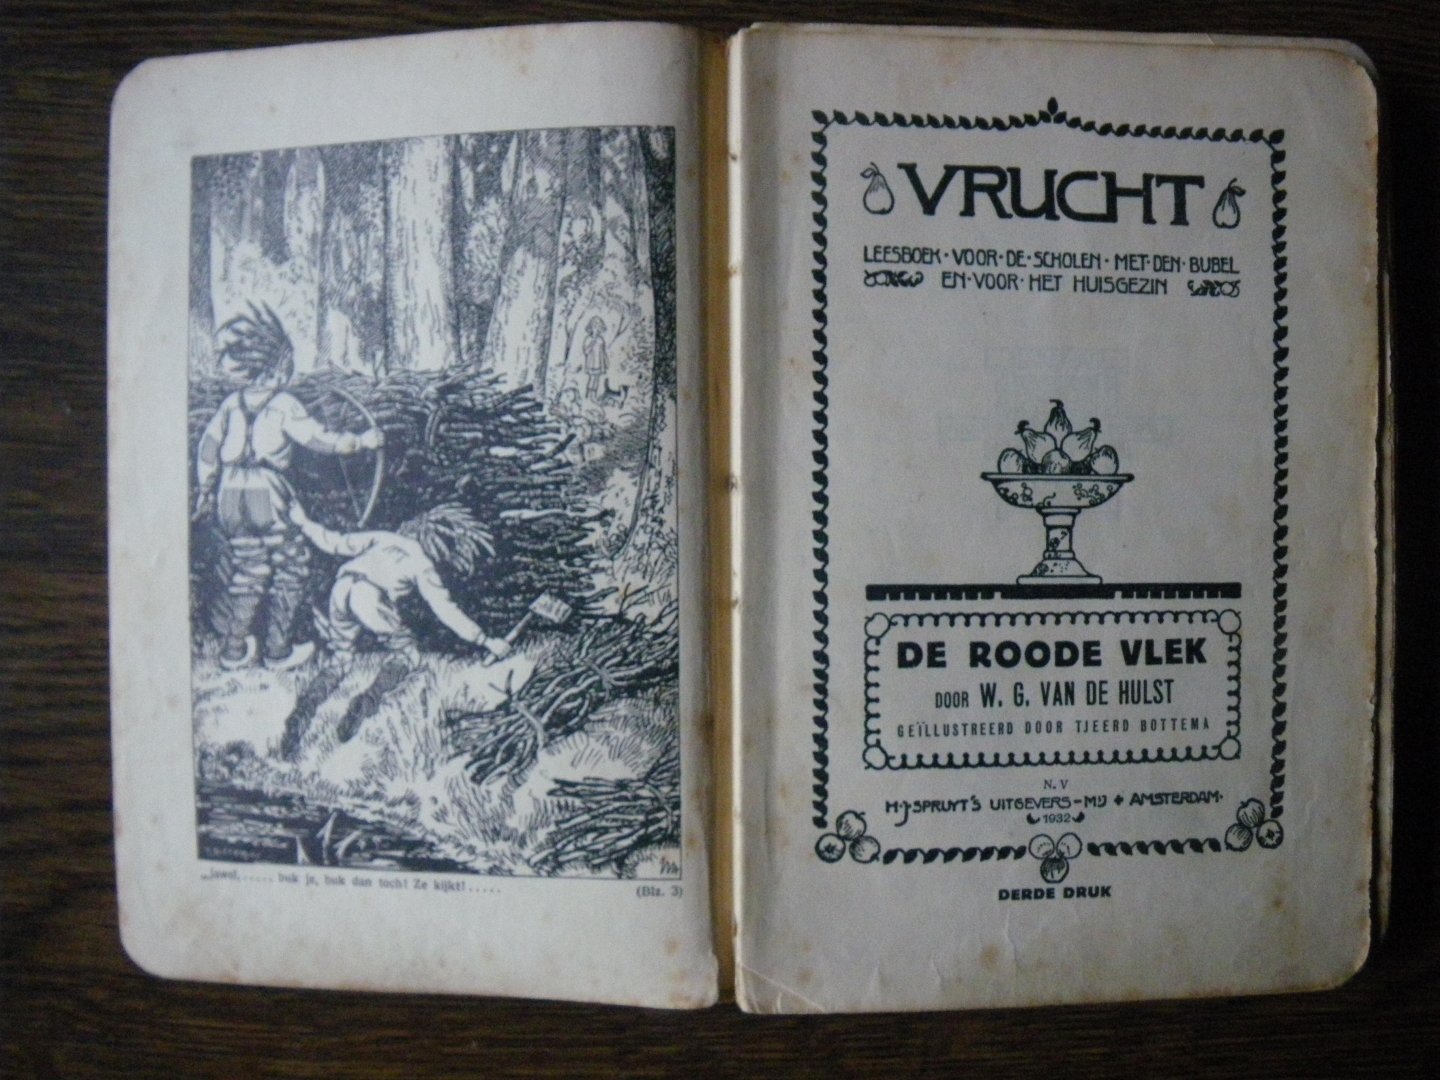 Hulst, W.G. van de - de Roode Vlek, ( leesboek voor de scholen met den bijbel, serie: Vrucht)